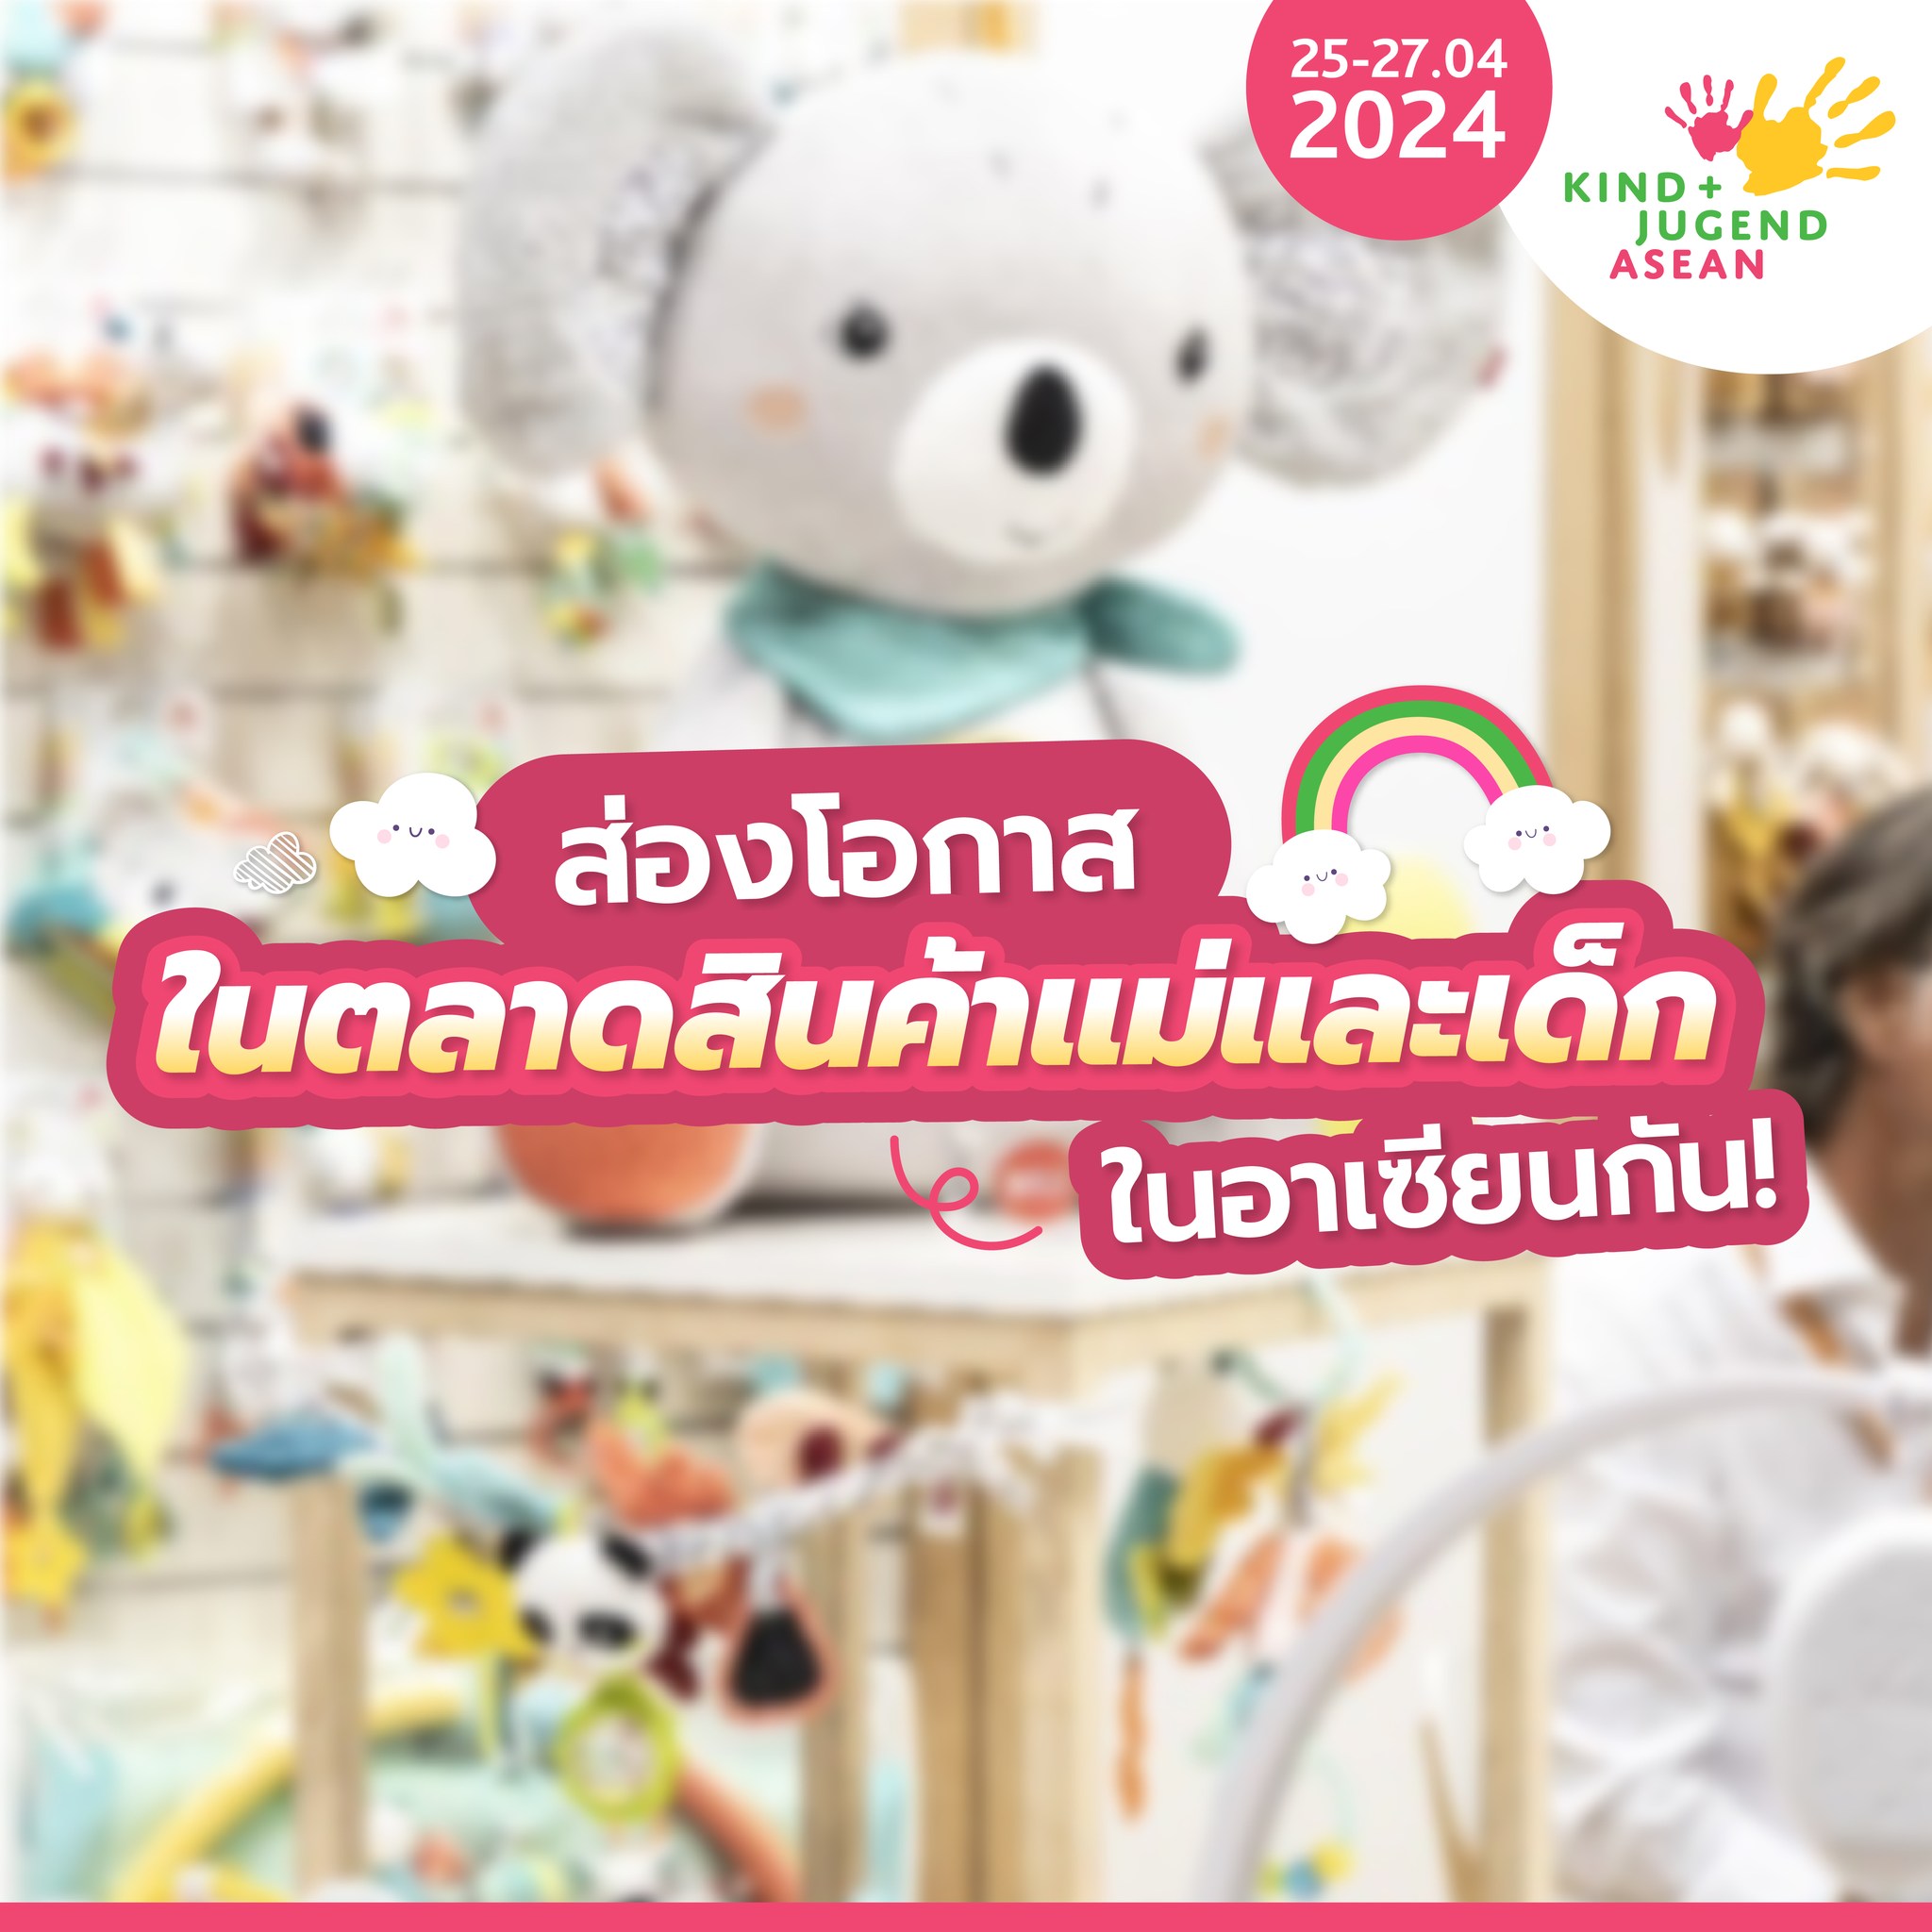 อีเว้นท์ - นับถอยหลังเตรียมพบกับ Kind + Jugend ASEAN 2024 วันที่ 25 - 27 เม.ย. 67 ลงทะเบียนล่วงหน้า ลุ้นรับ Art Toy จาก POPMART ได้แล้ววันนี้